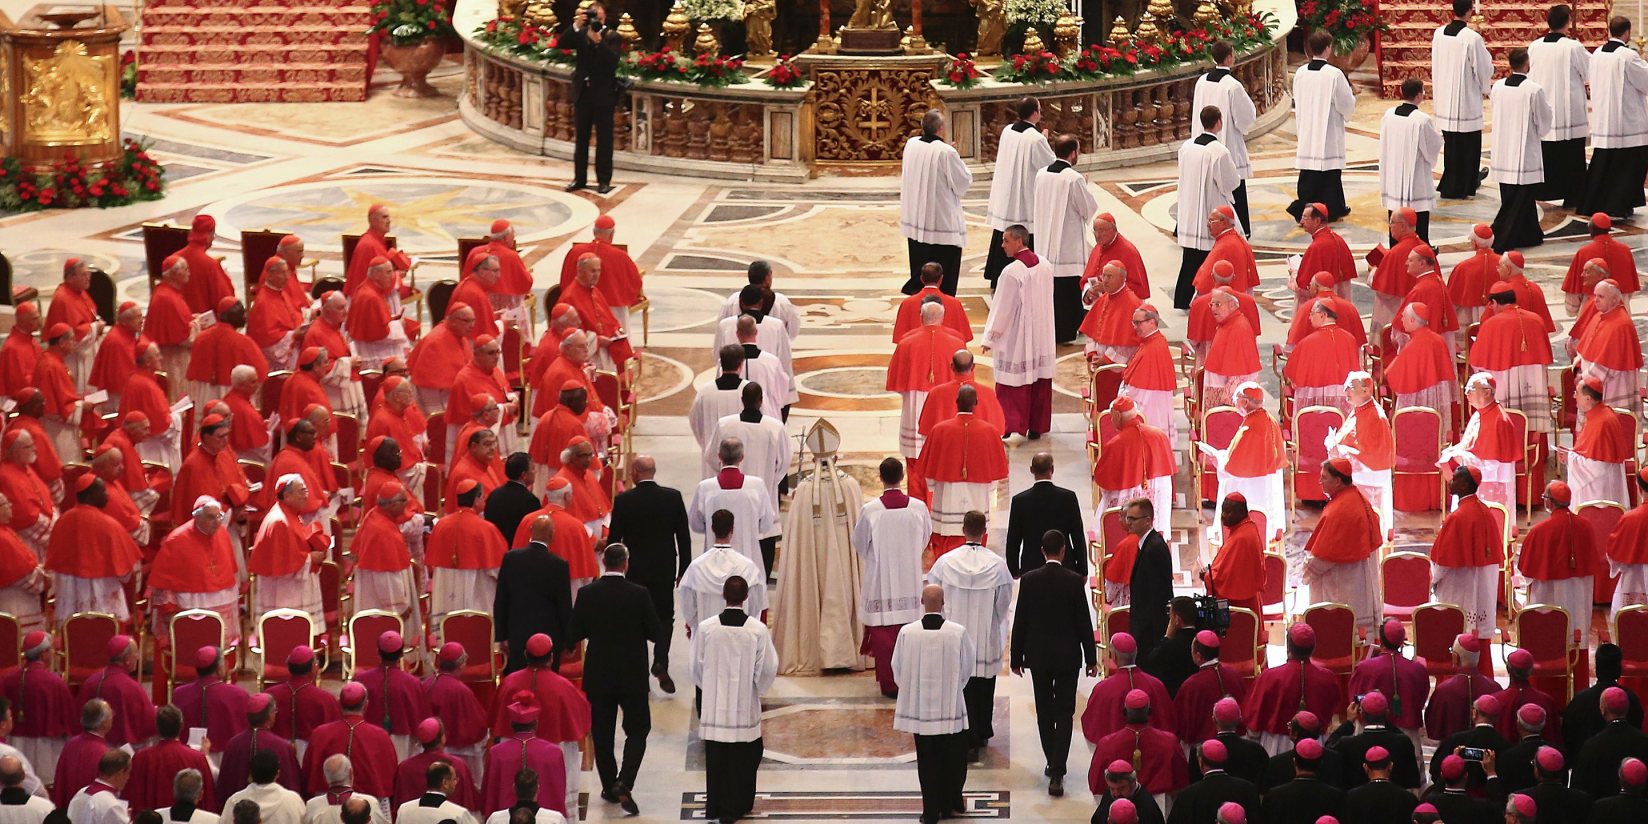 Os cardeais católicos de todo o mundo vão estar em Roma em reuniões com o Papa Francisco nos próximos dias